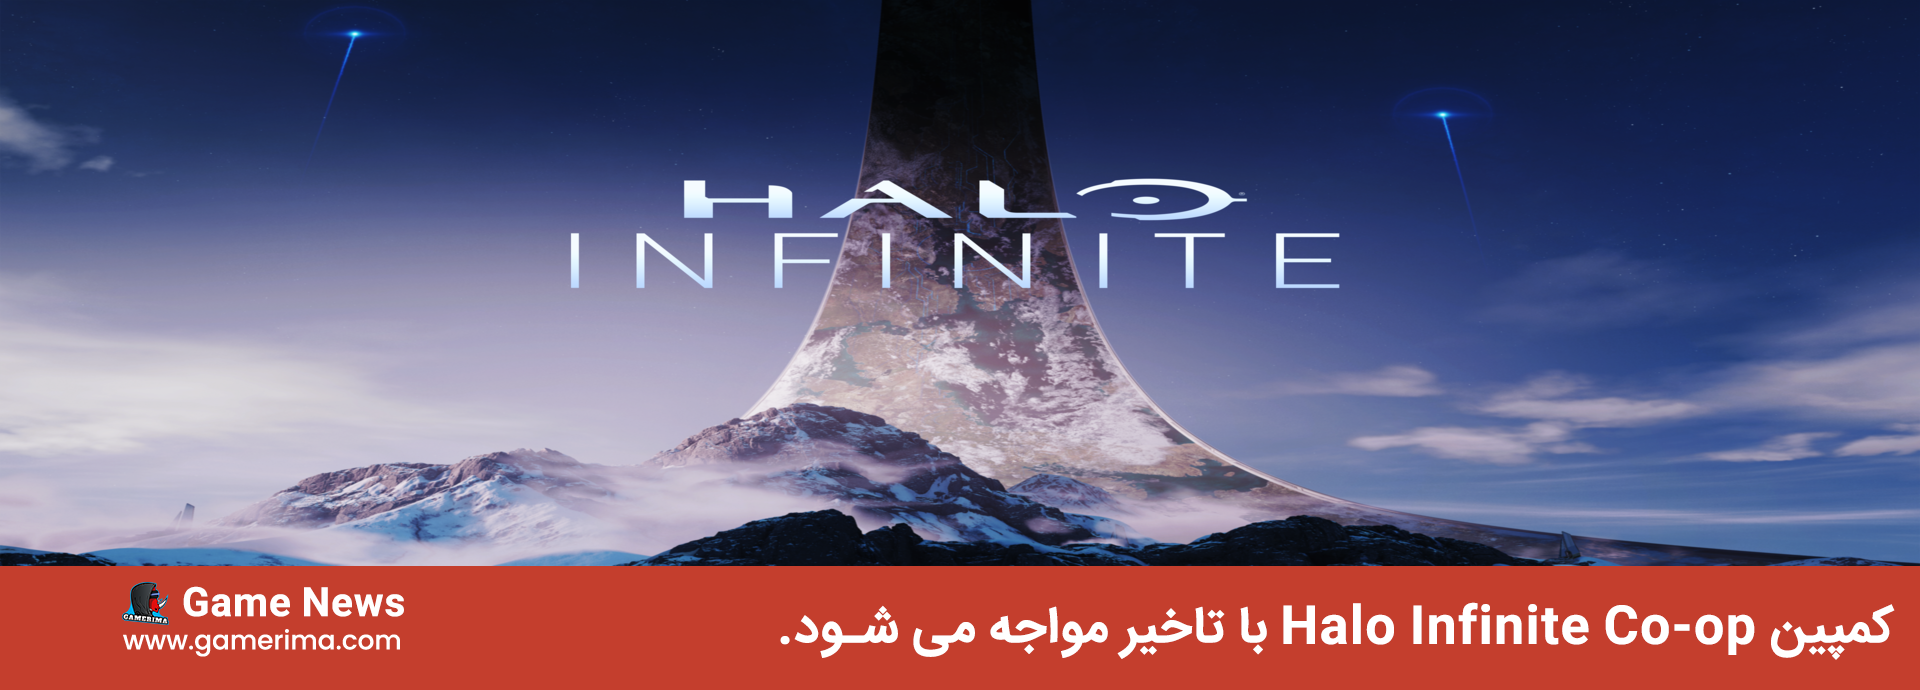 کمپین Halo Infinite Co-op با تاخیر مواجه می شود.